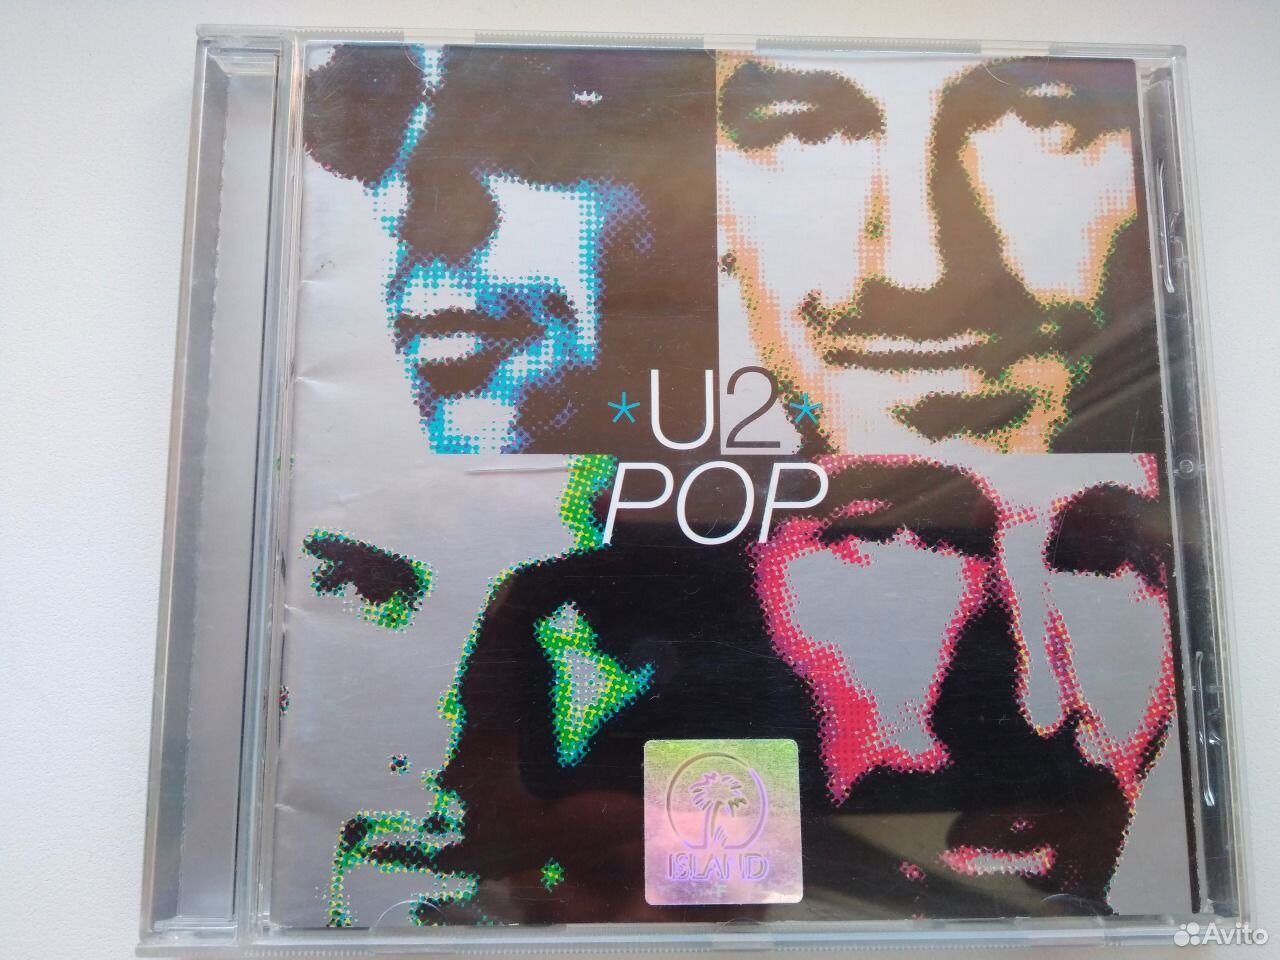 U2 Pop 1997. U2 Pop 1997 reissue. U2 "Pop (2lp)". U2 Pop CD Cover.